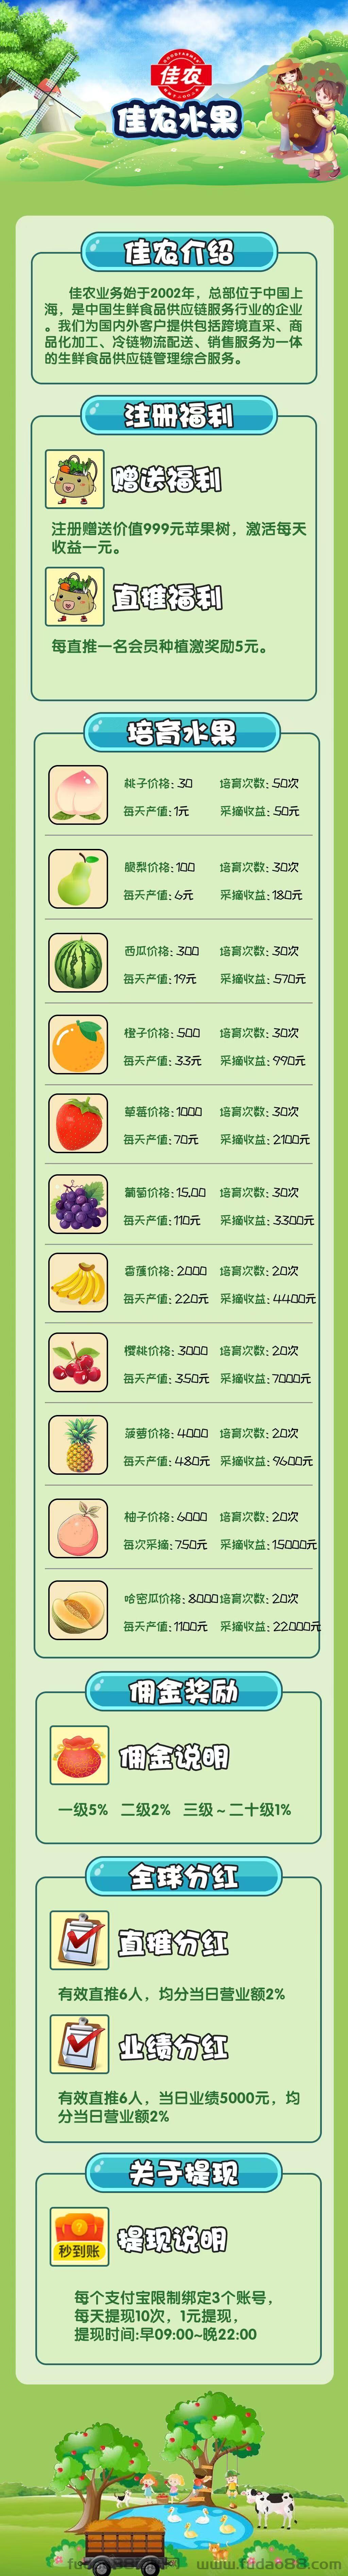  首码新车，《佳农水果》对接，注册送苹果树999，自动产果子收益，30米激活直推奖励5米。